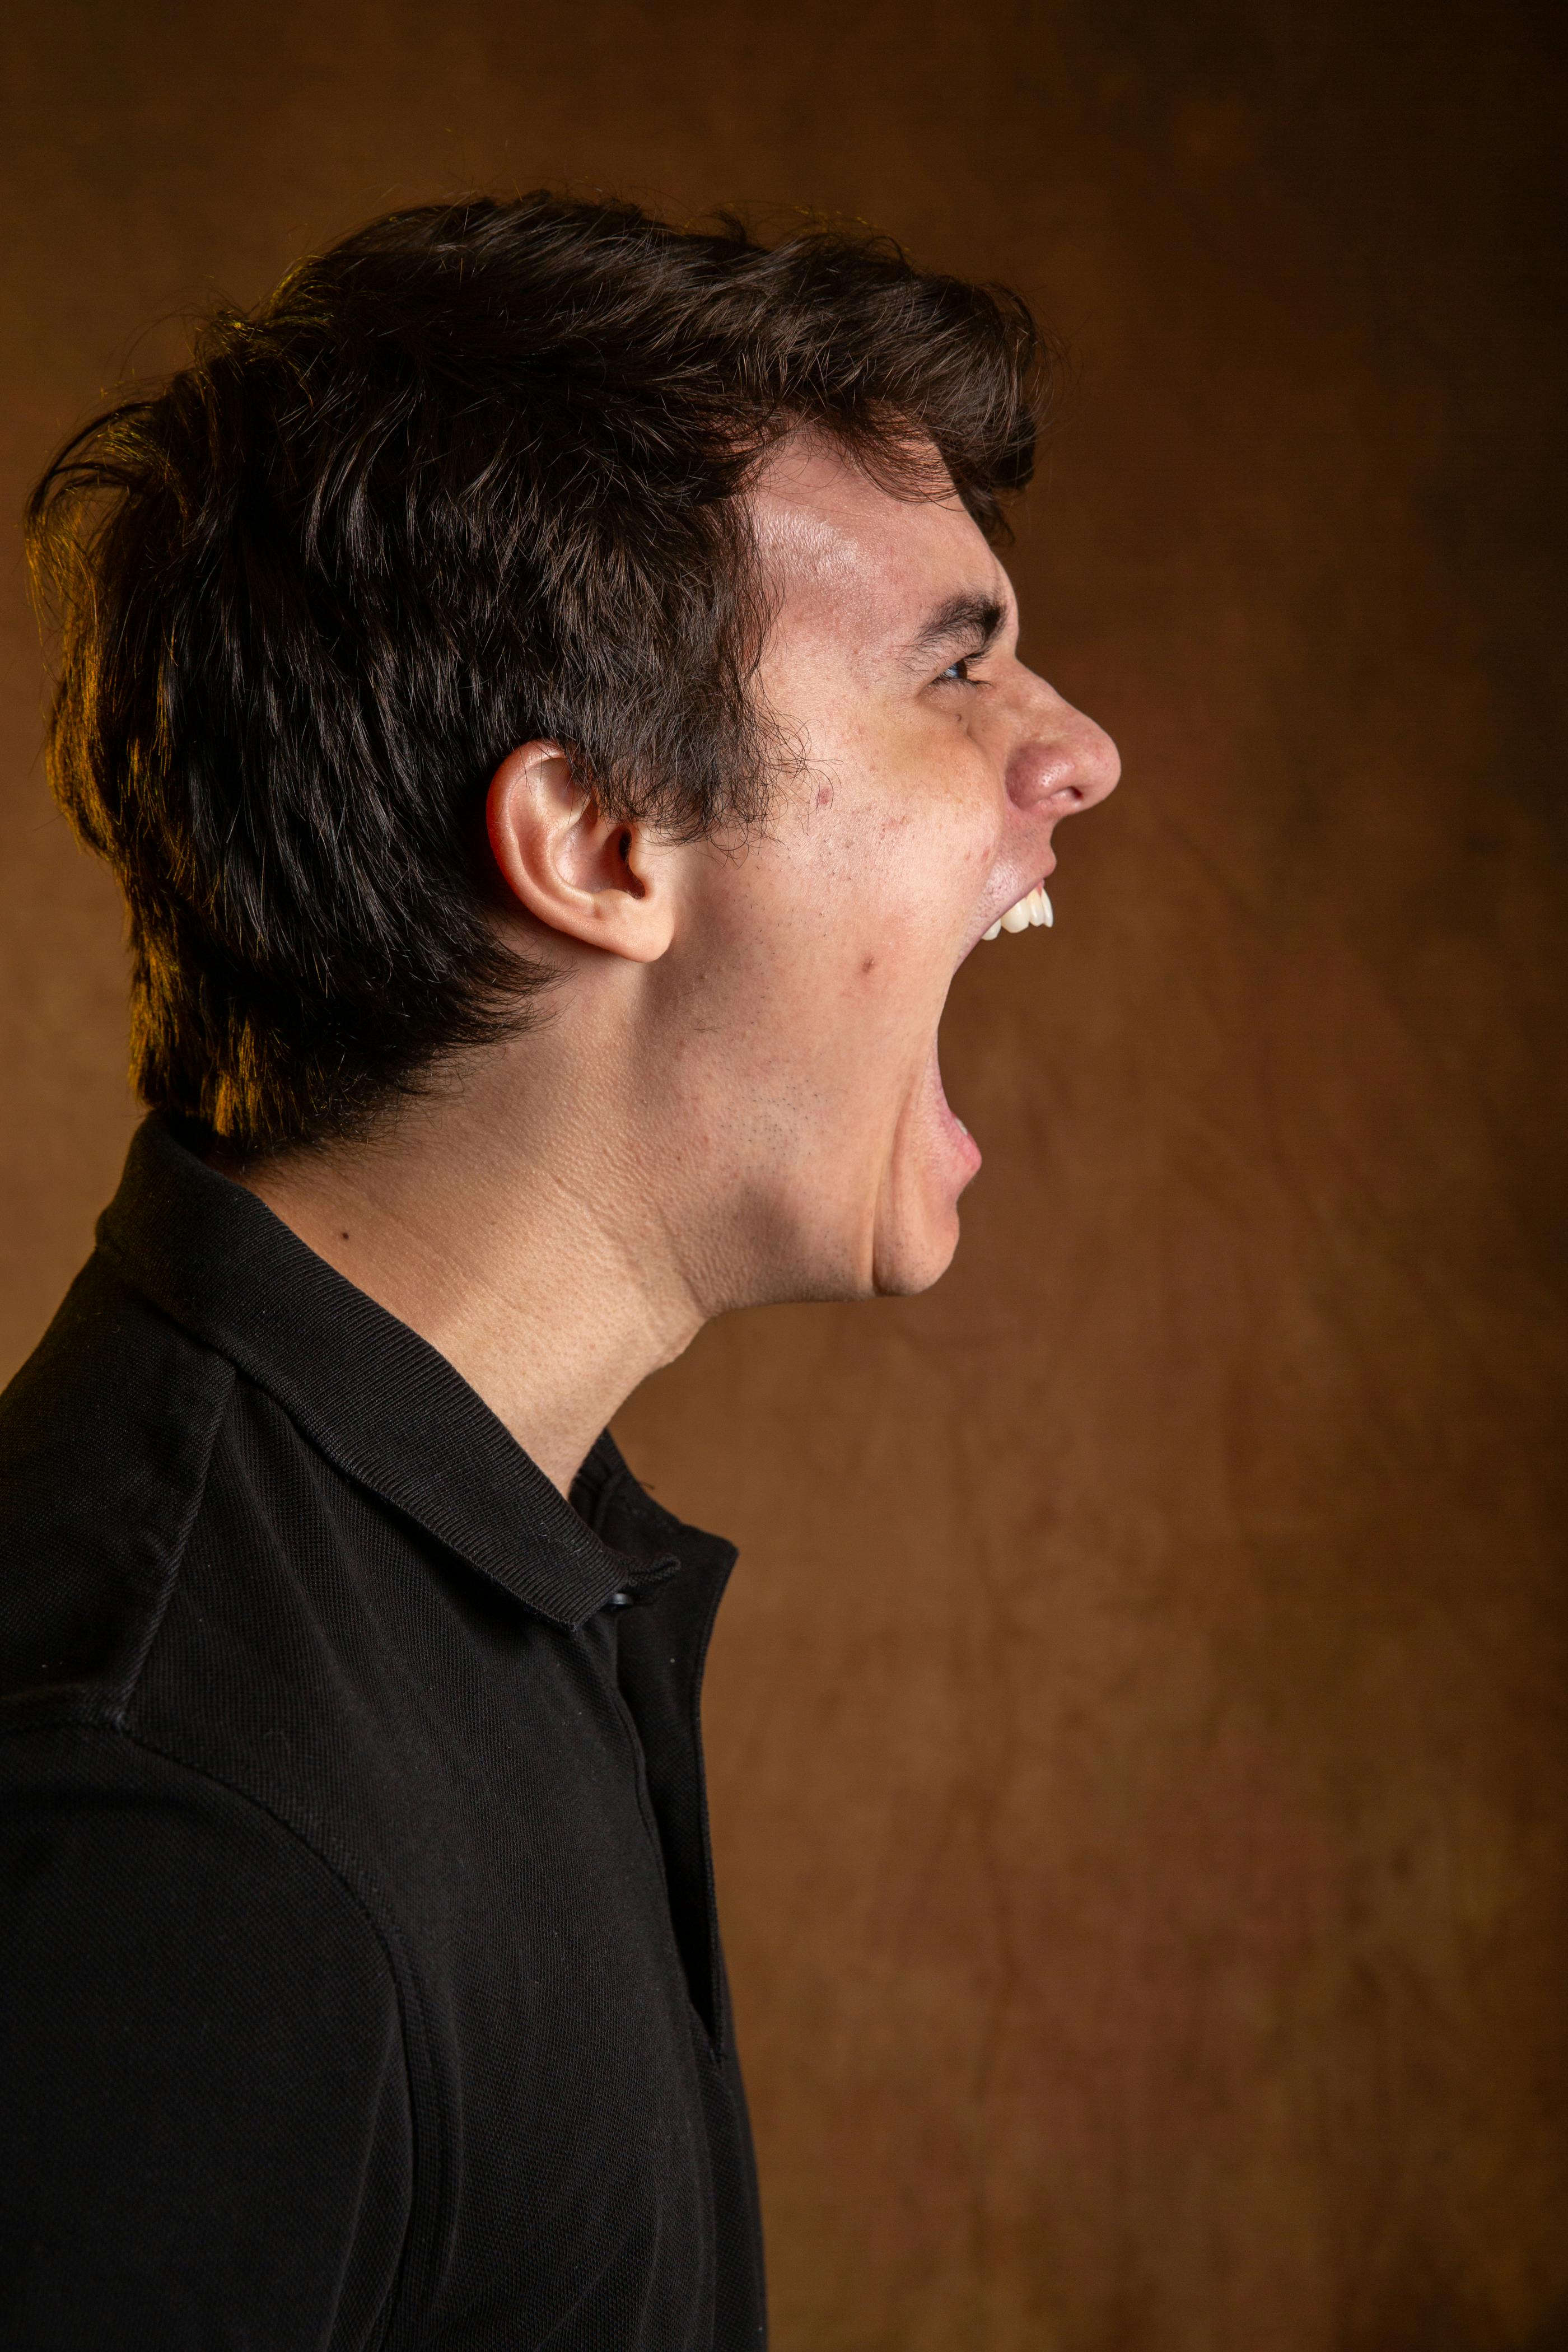 Ein Mann mit weit geöffnetem Mund, während er jemanden anschreit | Quelle: Pexels